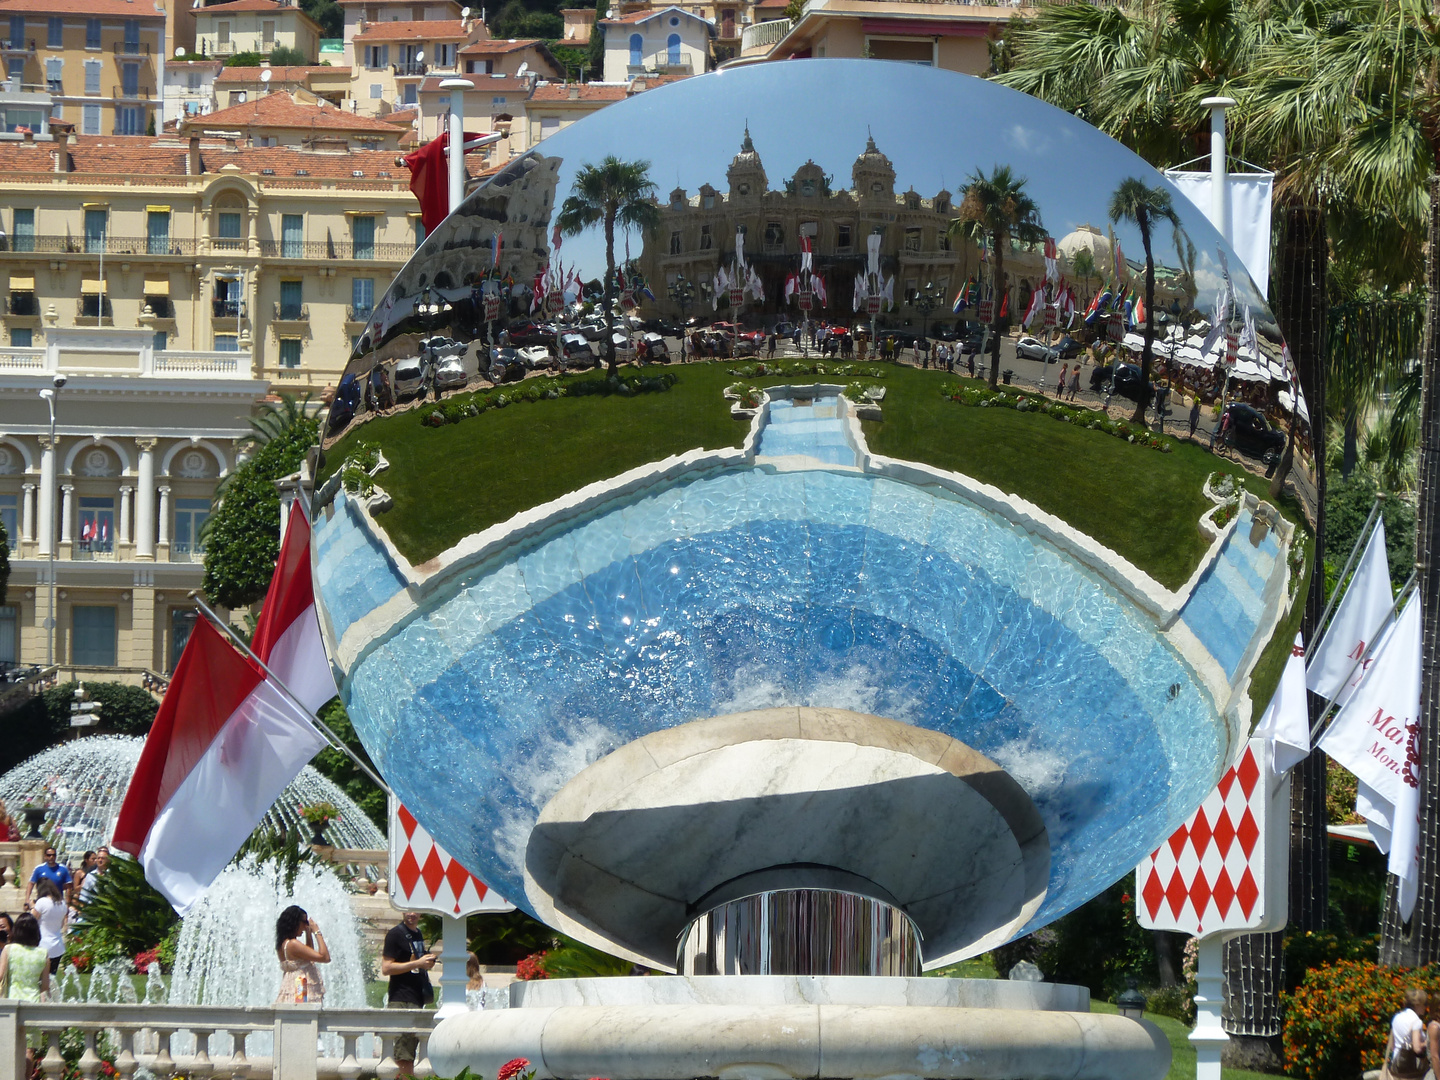 Monte Carlo Spielcasino im Spiegel des Brunnens